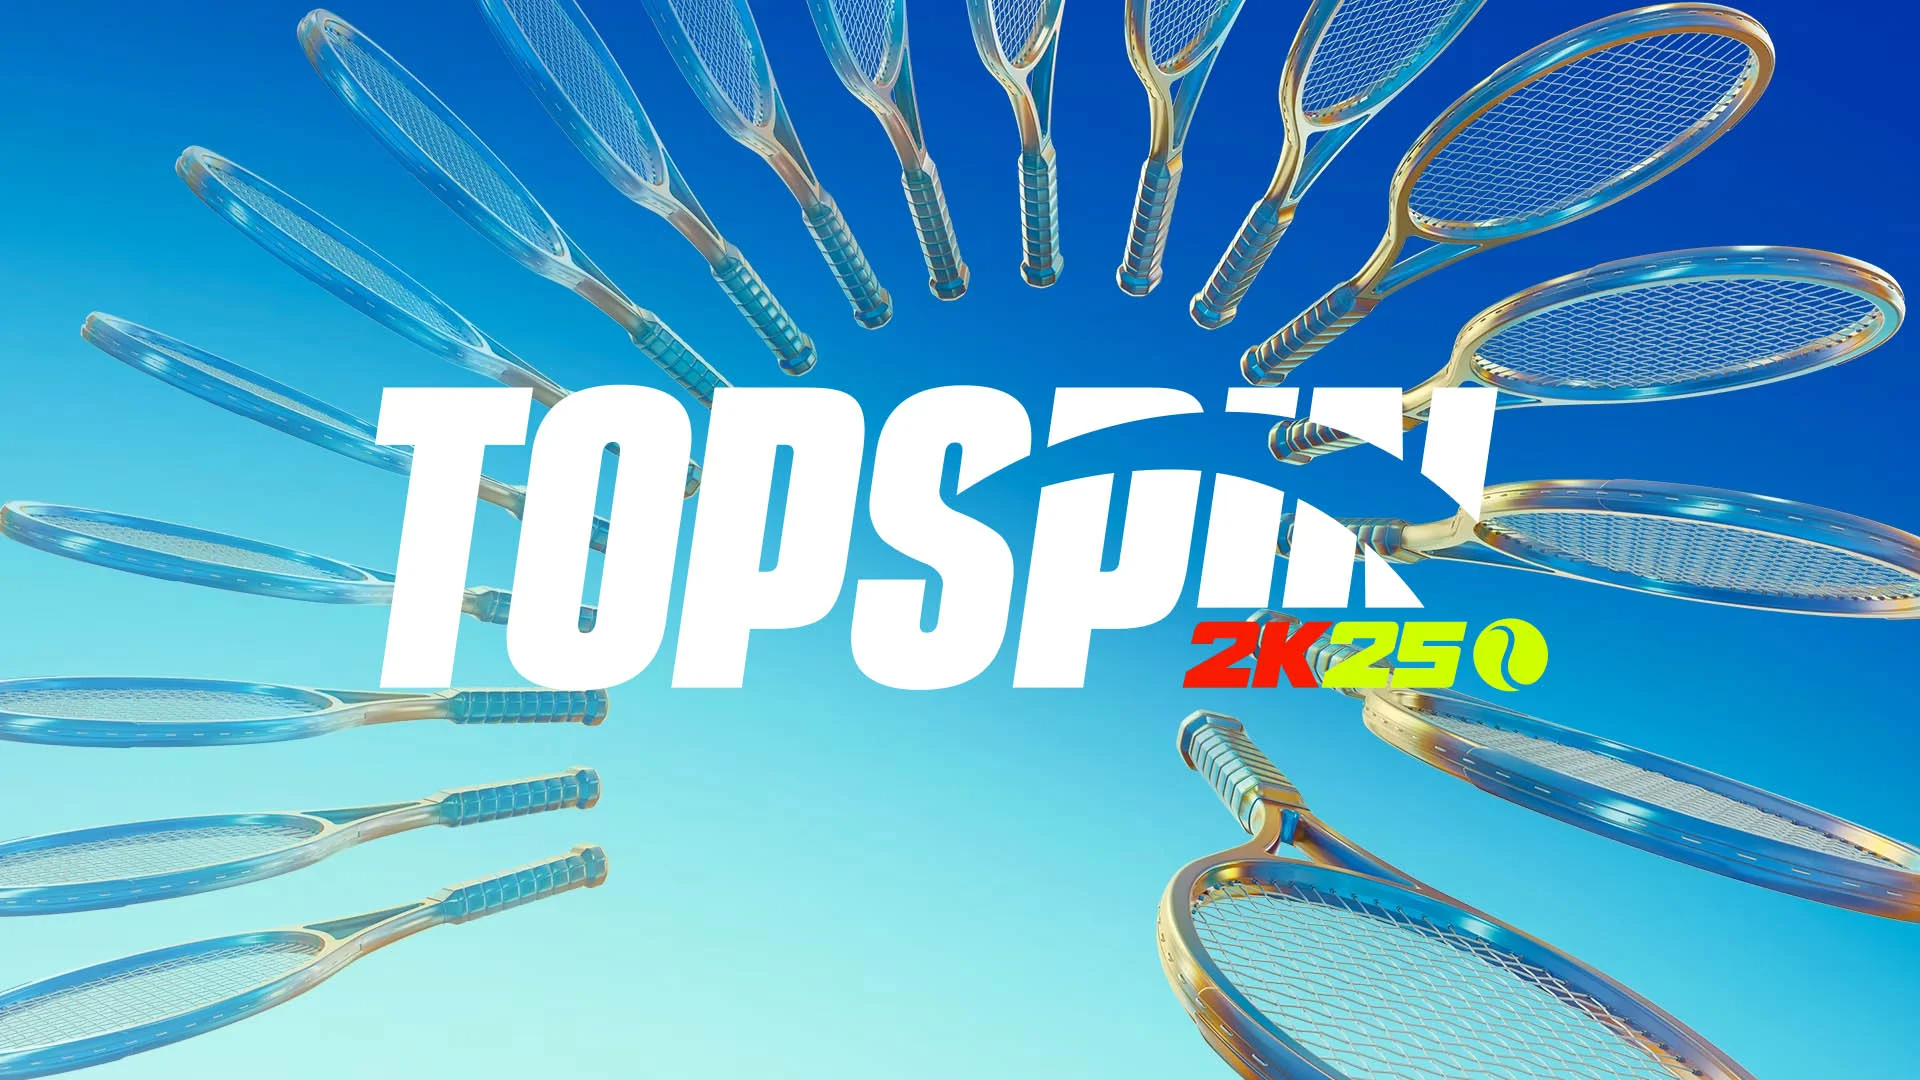 TopSpin 2K25 : Offrez-vous ce jeu vidéo à petit prix avec ces codes promo et bons plans